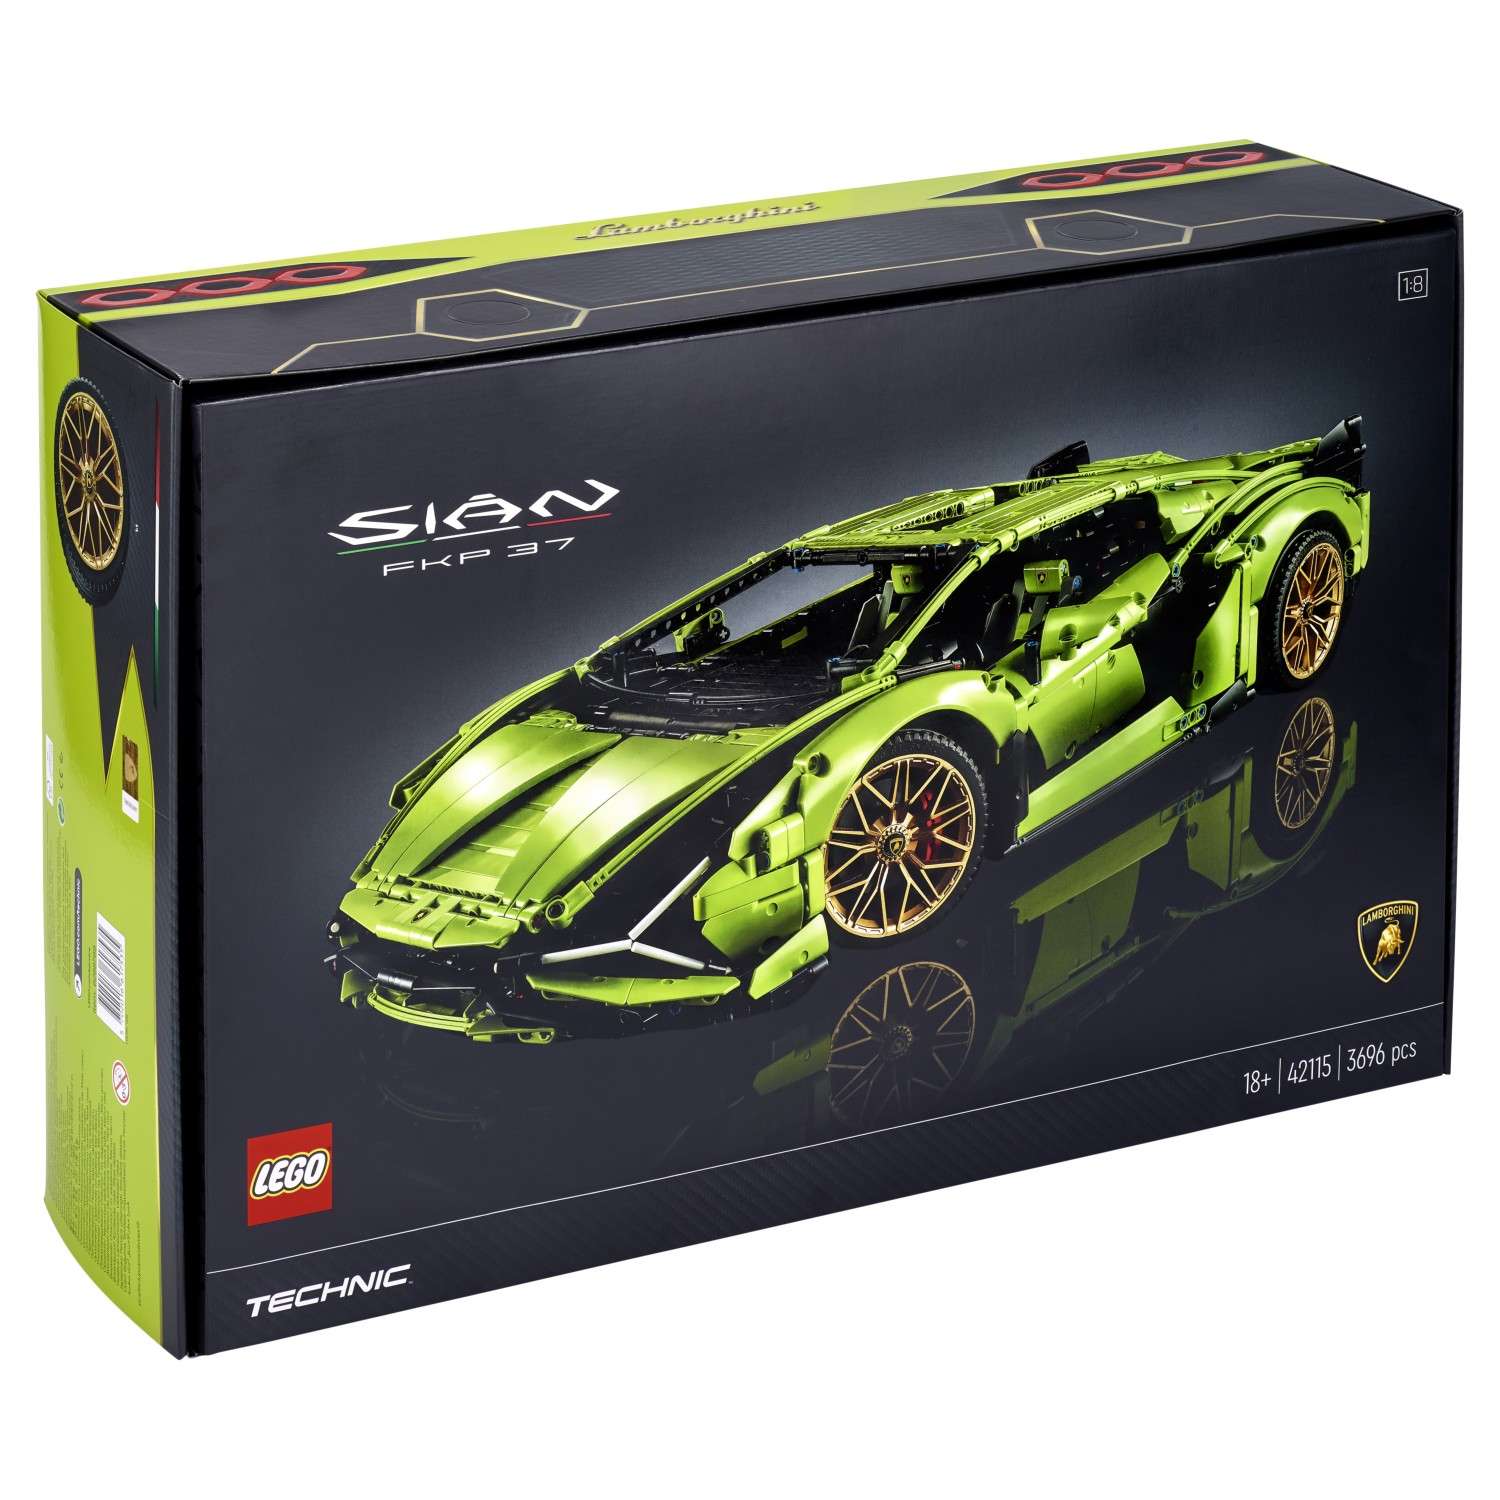 Конструктор LEGO Technic Lamborghini Sian FKP 37 42115 - фото 3